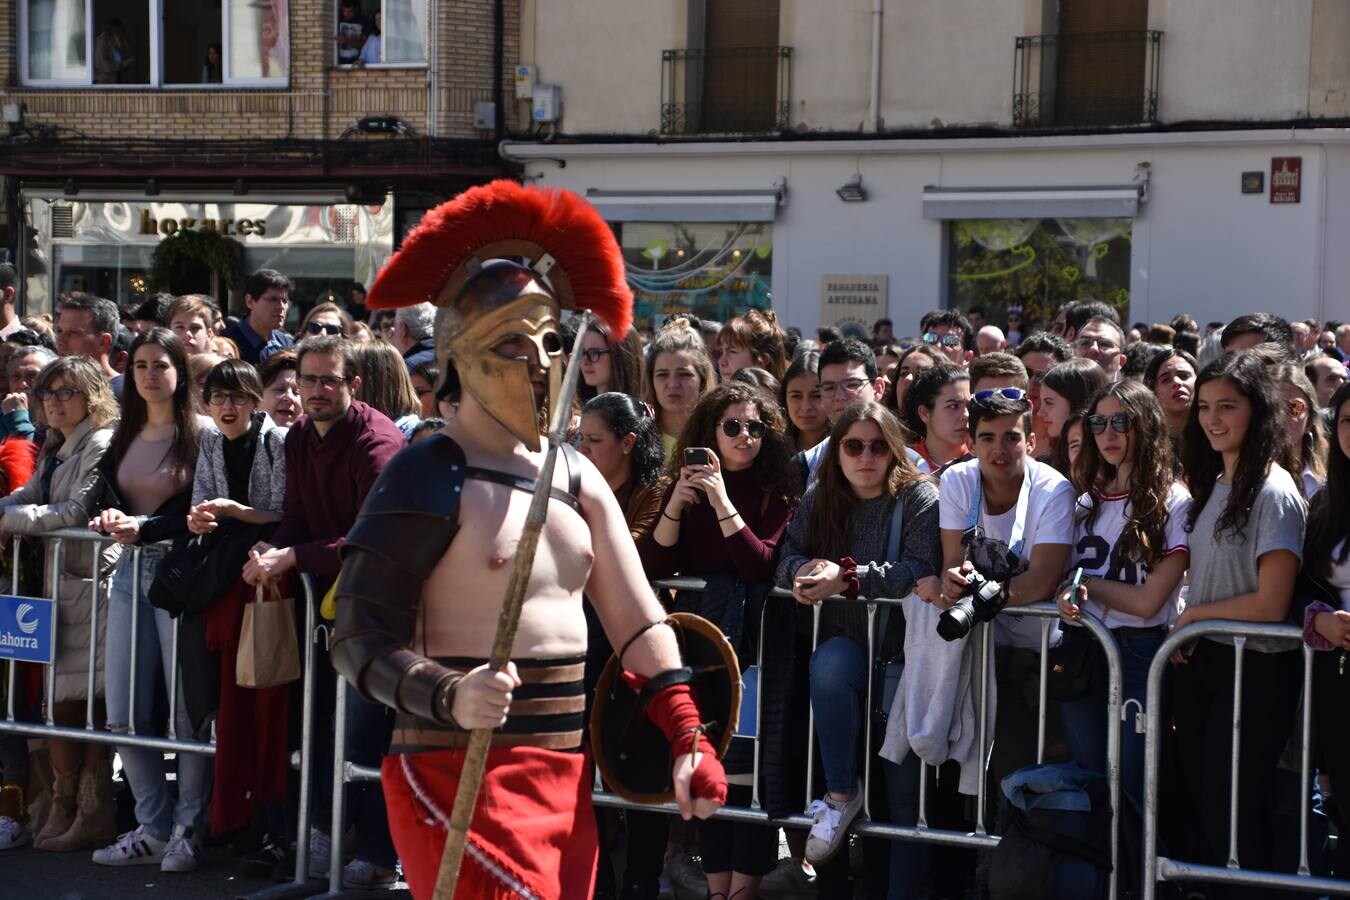 La ciudad recuerda su historia romana con la celebración de Mercafórum, un evento que se inauguró este sábado y que reserva numerosas actividades para este domingo